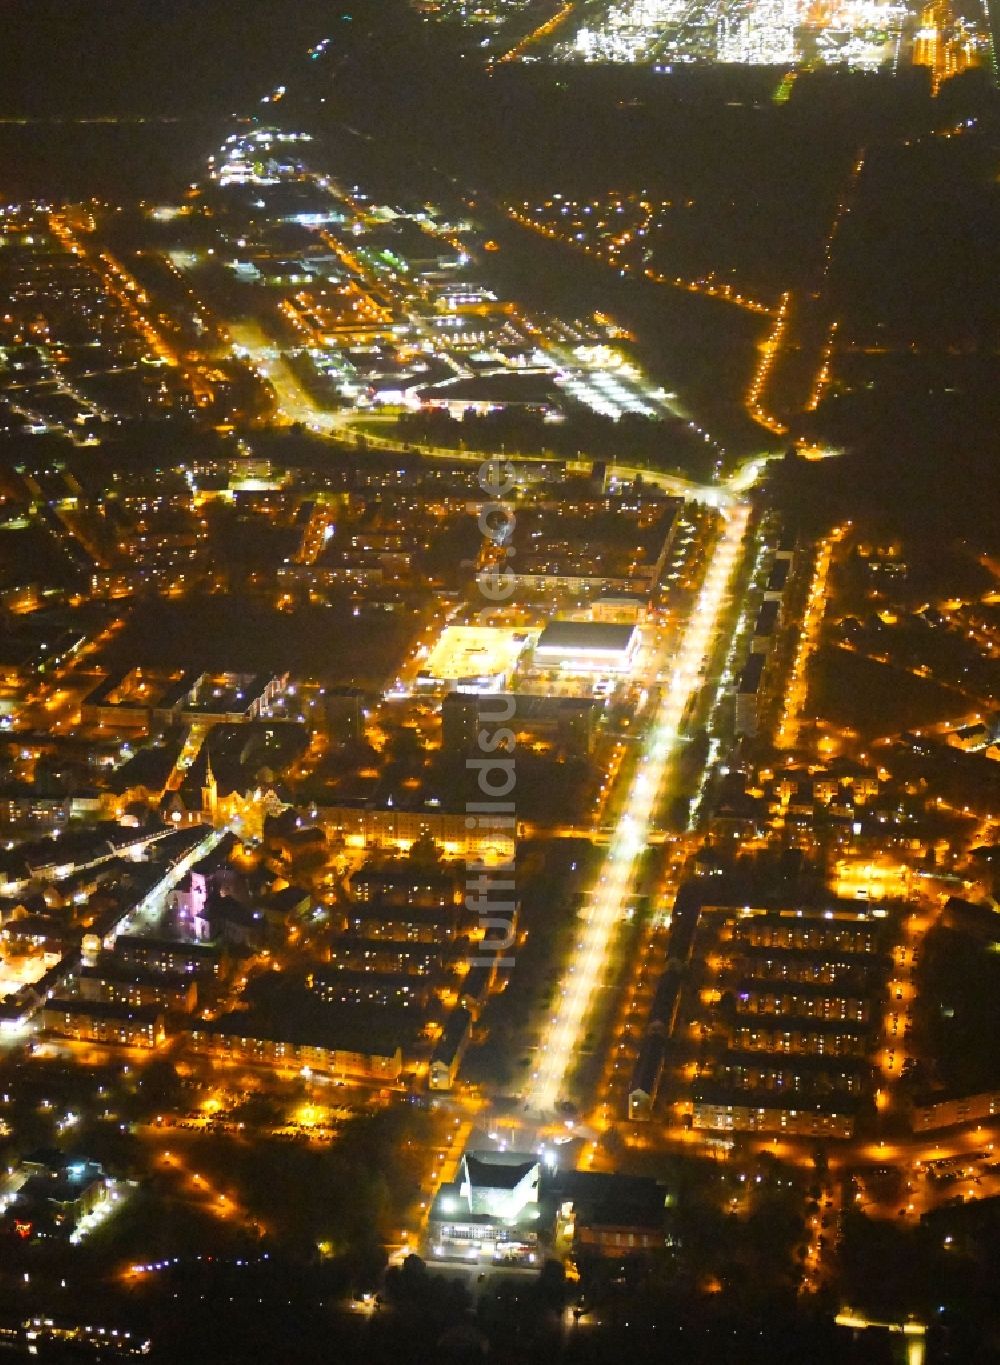 Nacht-Luftaufnahme Schwedt/Oder - Nachtluftbild Stadtzentrum im Innenstadtbereich in Schwedt/Oder im Bundesland Brandenburg, Deutschland